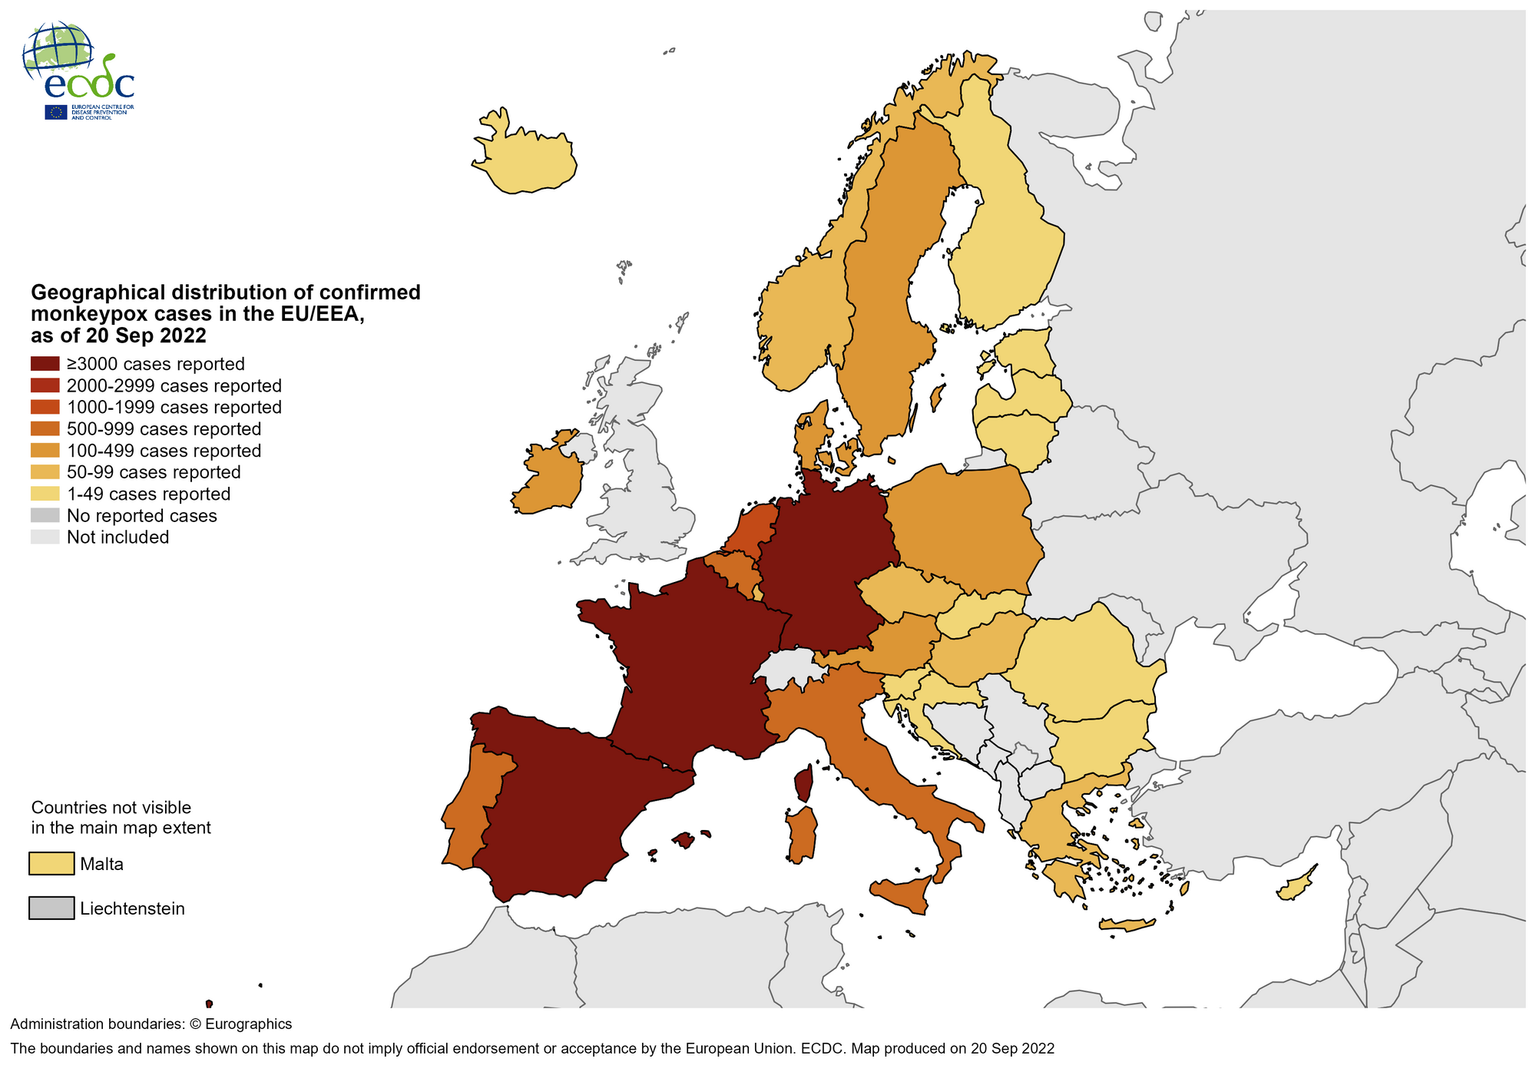 Mappa geografica della distribuzione del vaiolo delle scimmie in Europa